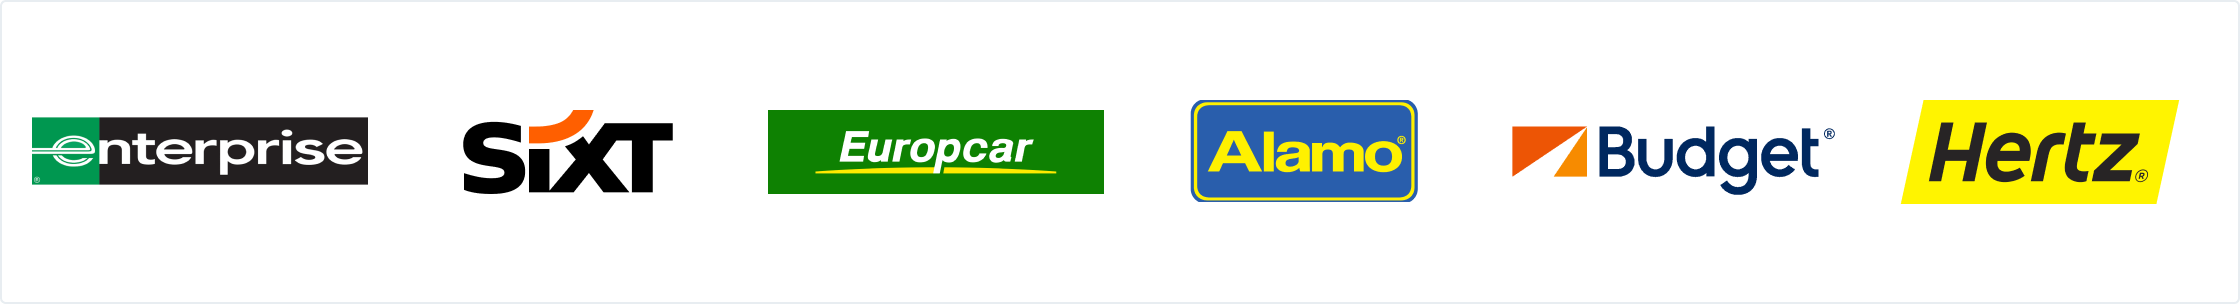 Aanbiedingen van de grootste autoverhuurbedrijven: Enterprise, Sixt, Europcar, Alamo, Budget en Hertz